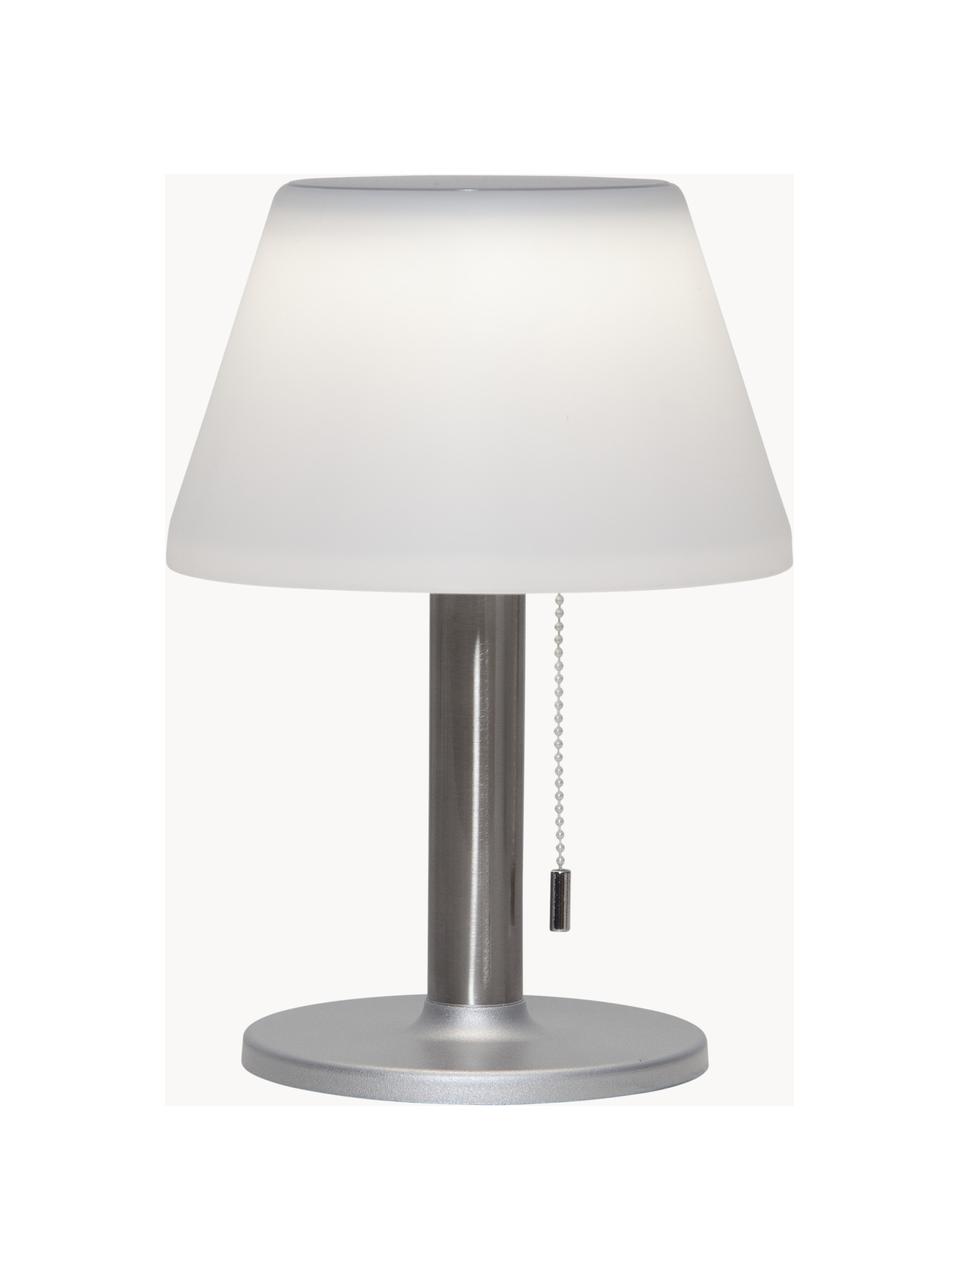 Solar outdoor tafellamp Solia, Lampenkap: kunststof, Lampvoet: edelstaal, Wit, zilverkleurig, Ø 20 x H 28 cm